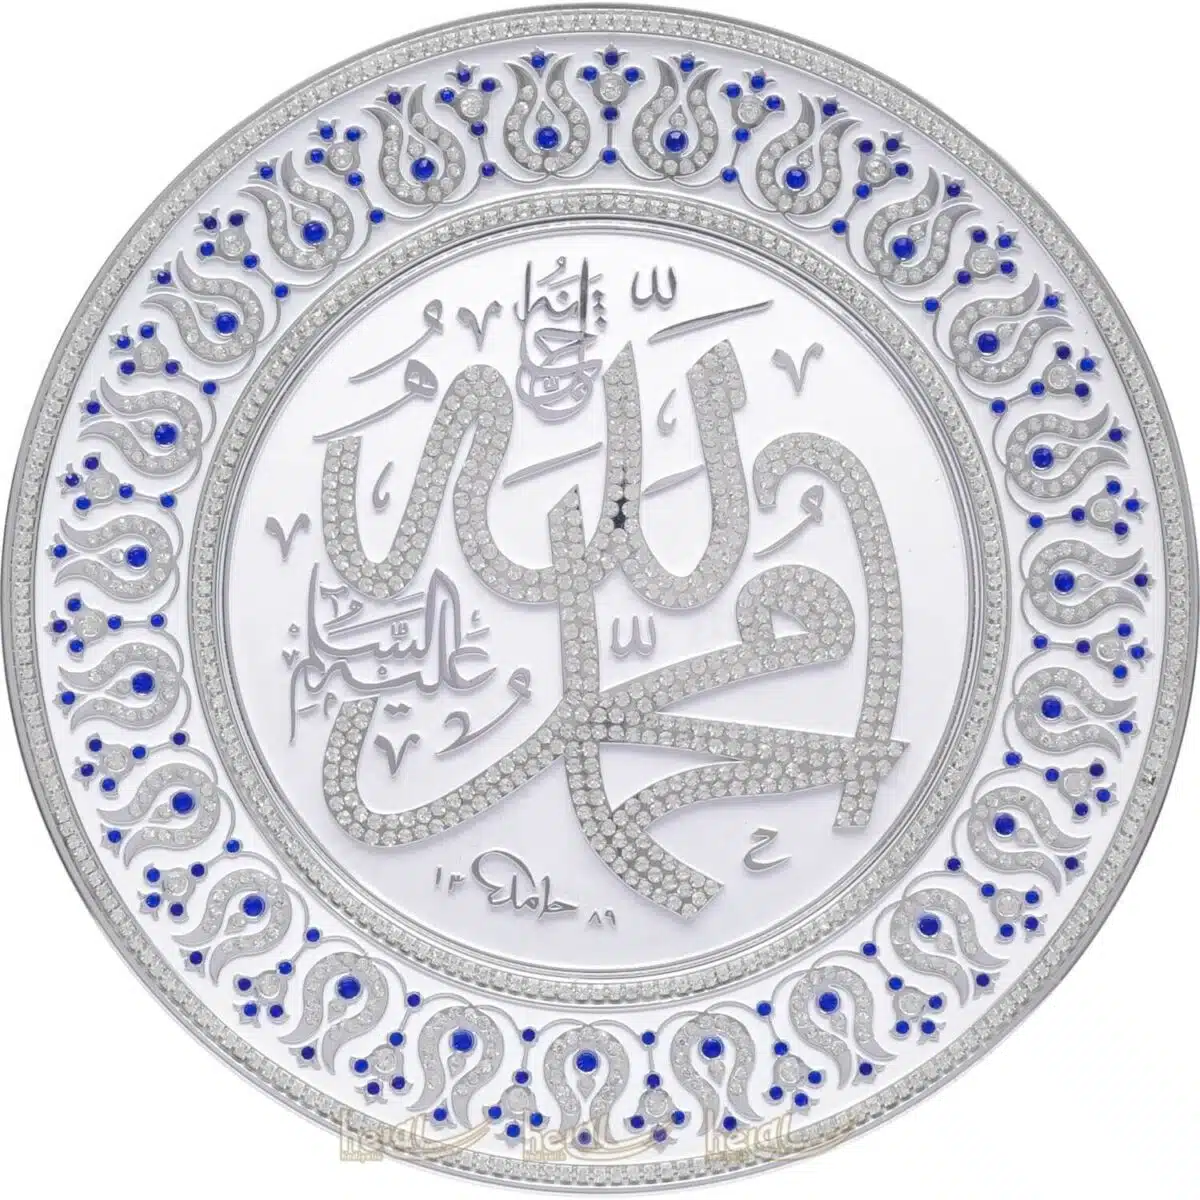 33cm Kristal Çok Taşlı Allah cc.ve Muhammed sav. Lafzı Yazılı Tabak Masa Üstü ve Duvar Süsü Ayetli Ürünler